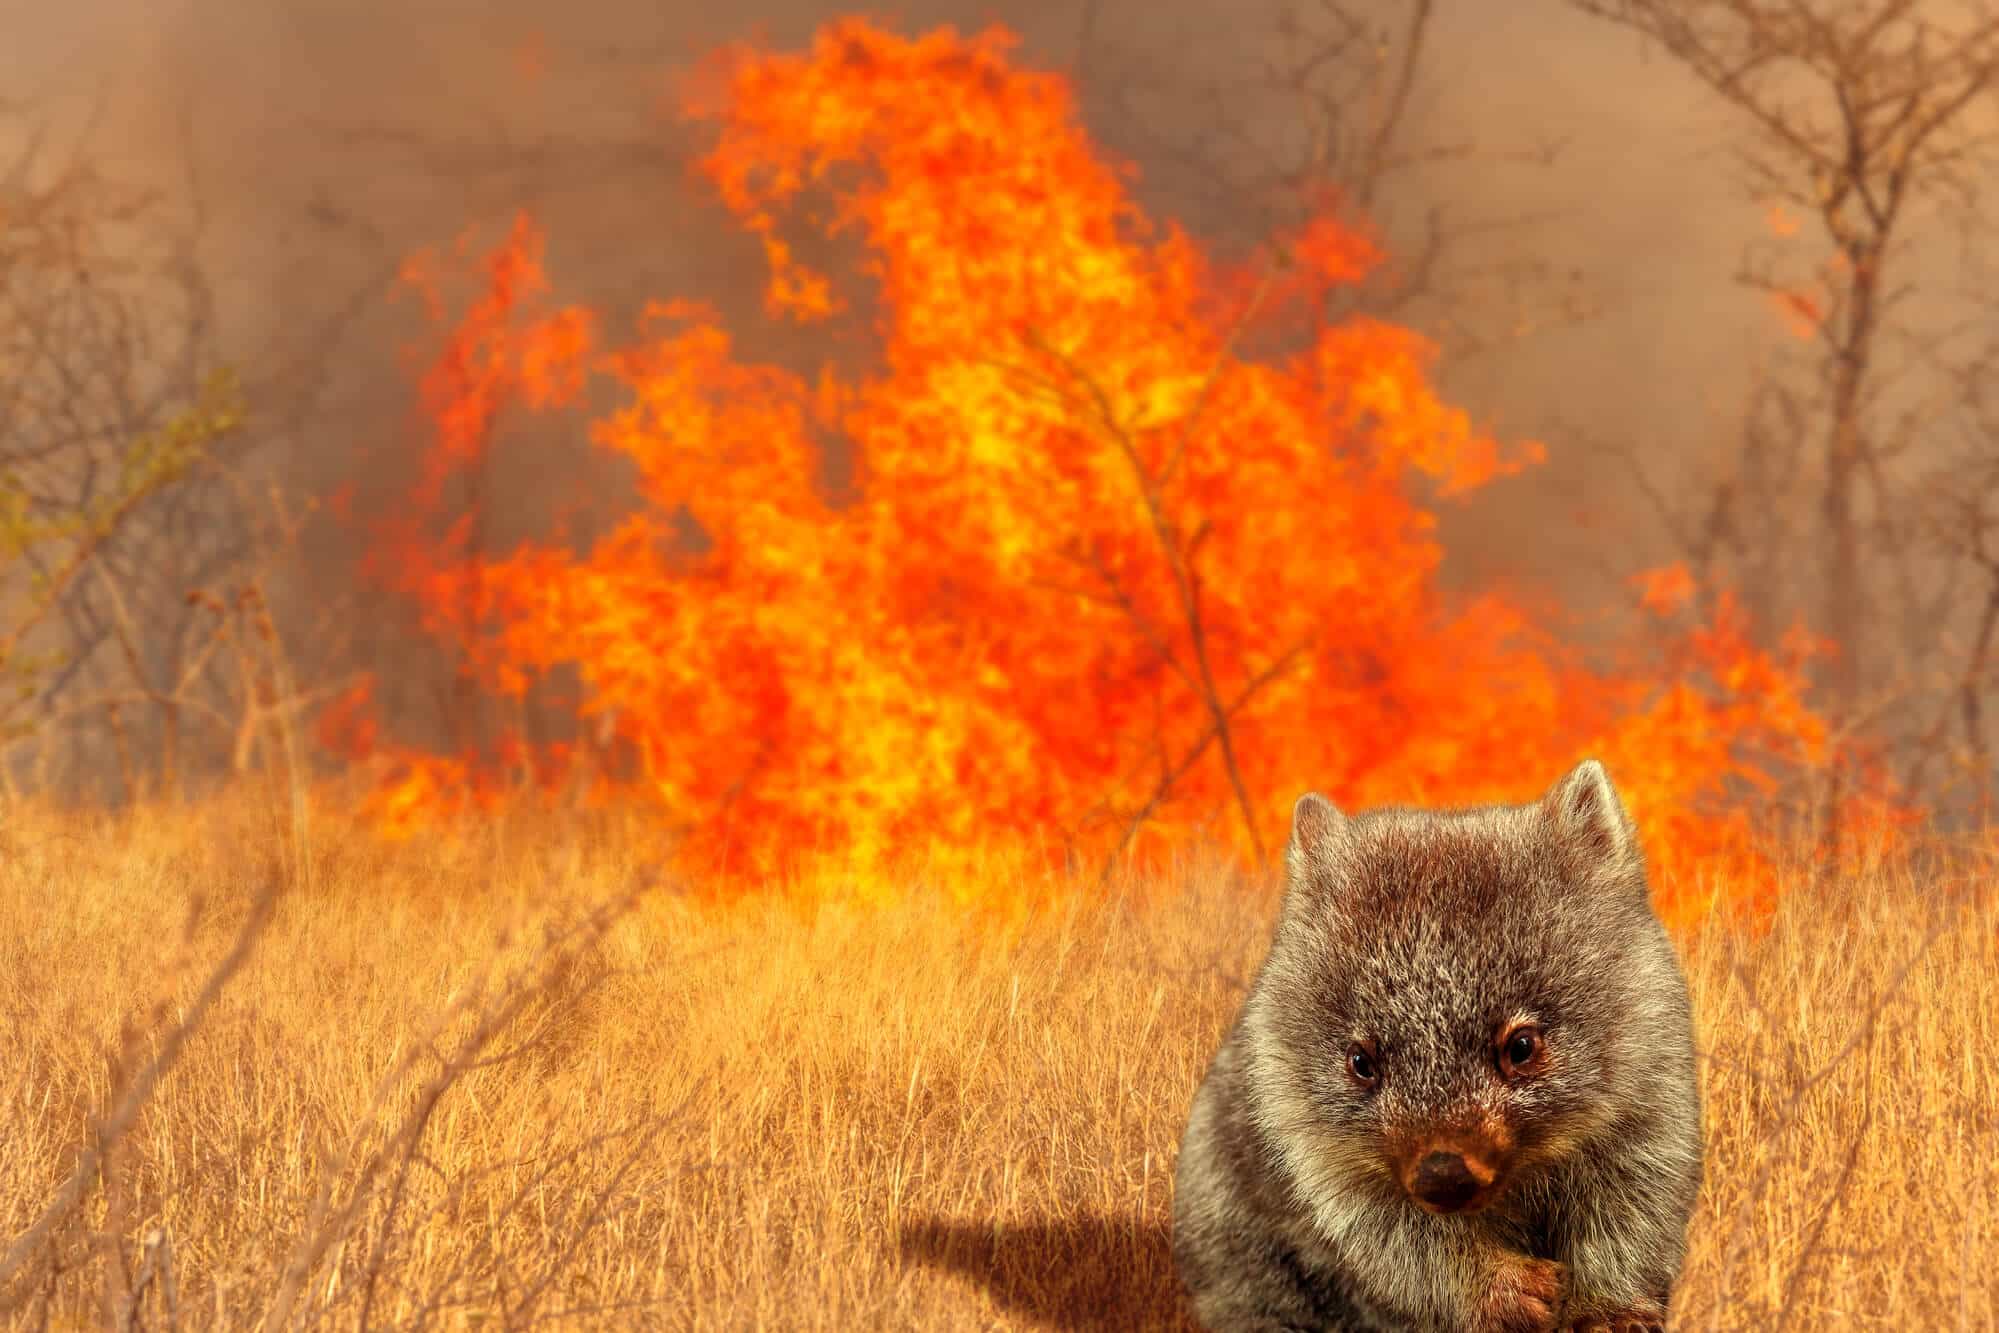 וומבט נס מפני שריפת יער באוסטרליה. <a href="https://depositphotos.com">אילוסטרציה: depositphotos.com</a>